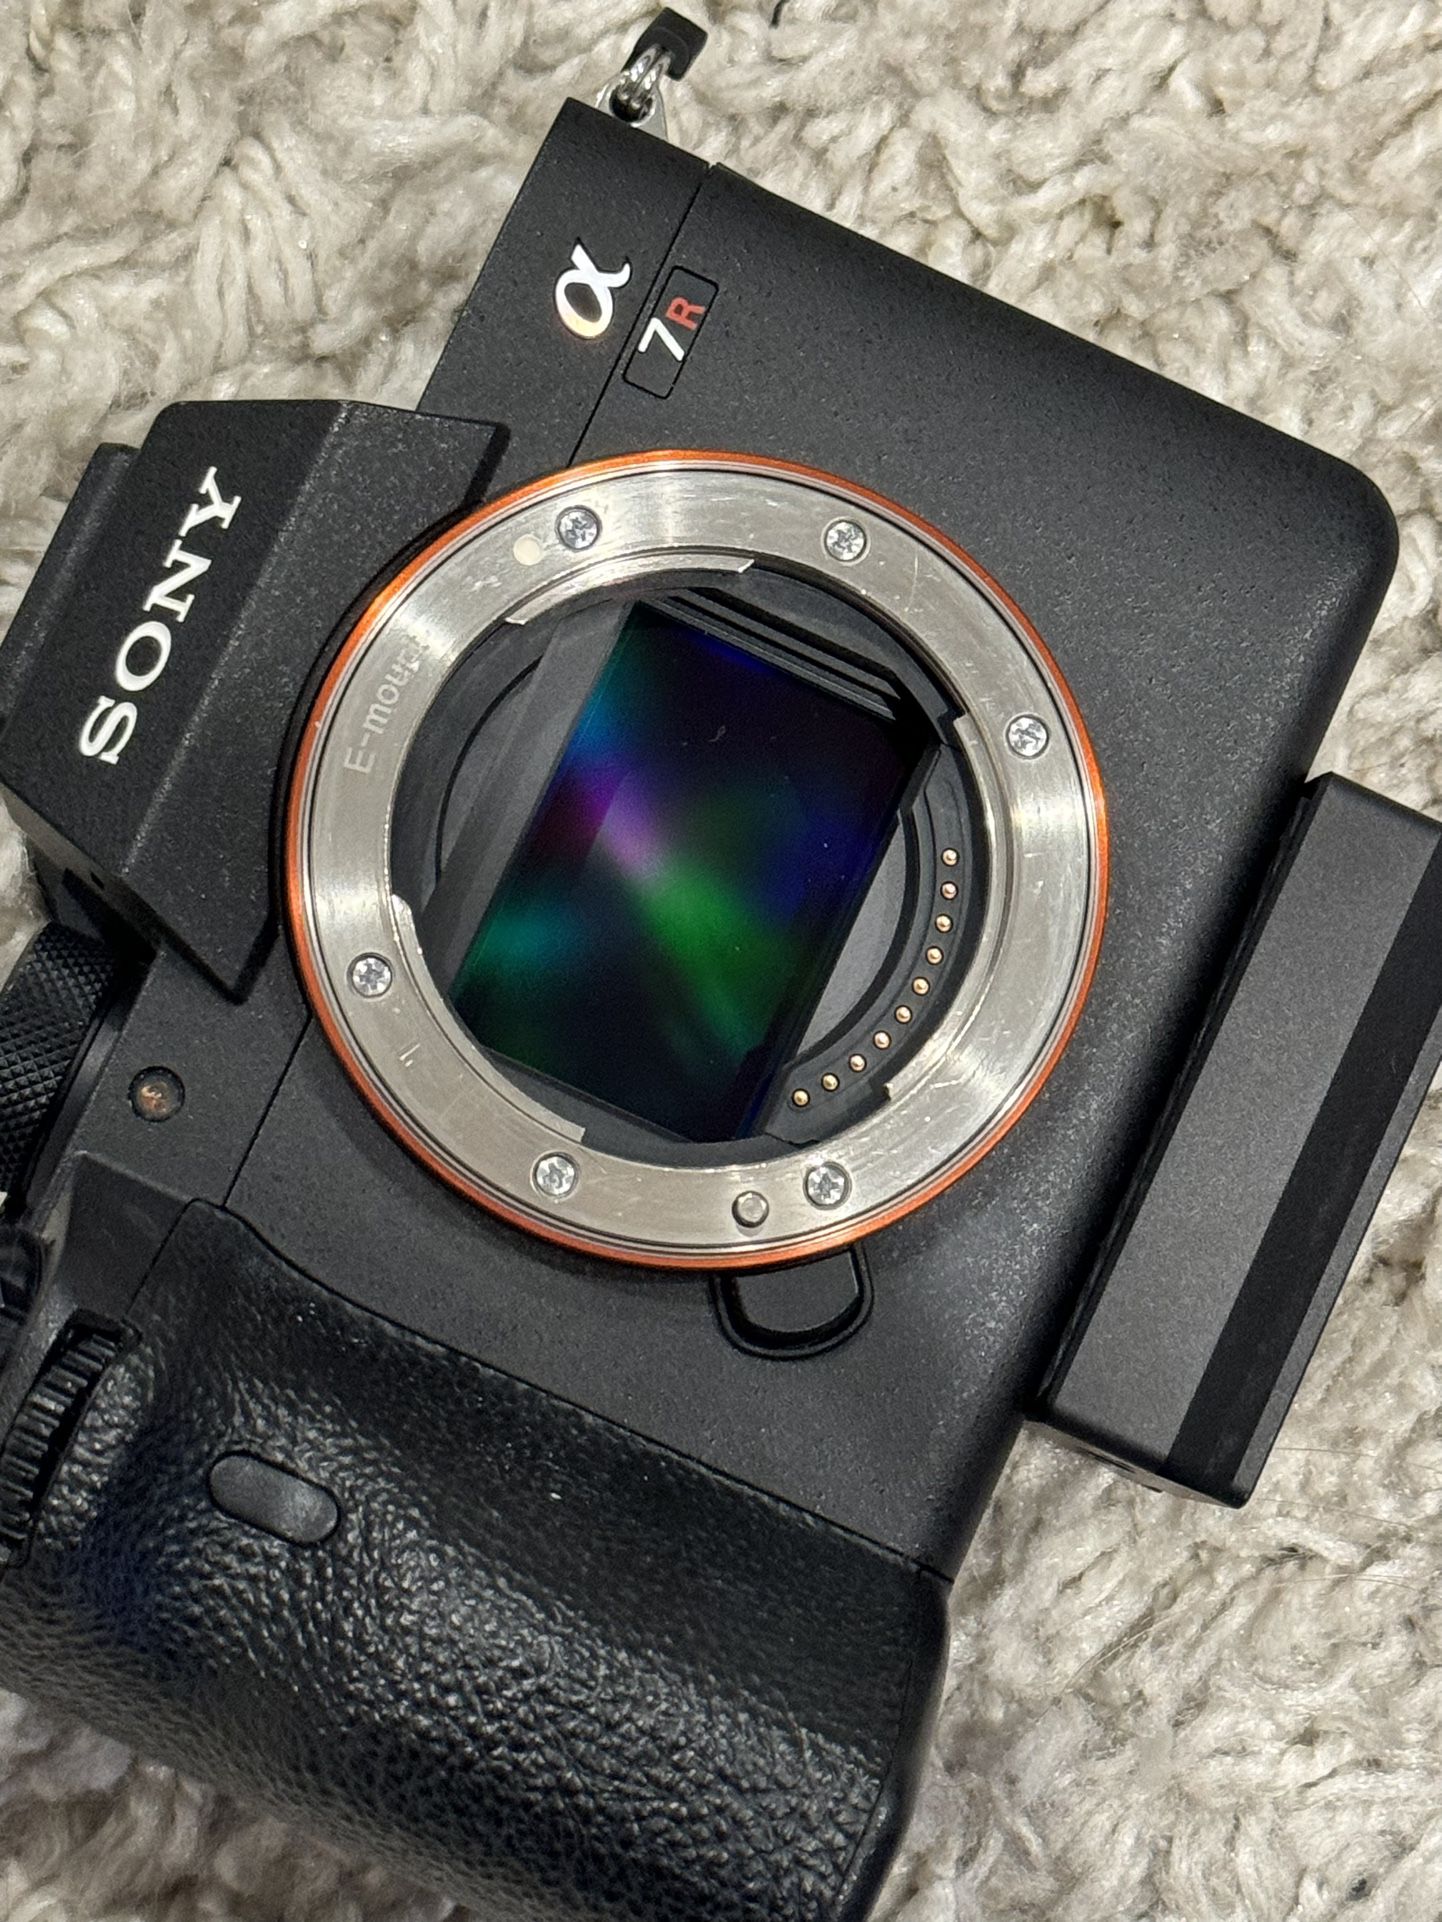 Alpha 7R IV - Full-frame Interchangeable Lens Camera 61MP, 10FPS, 4K/30p